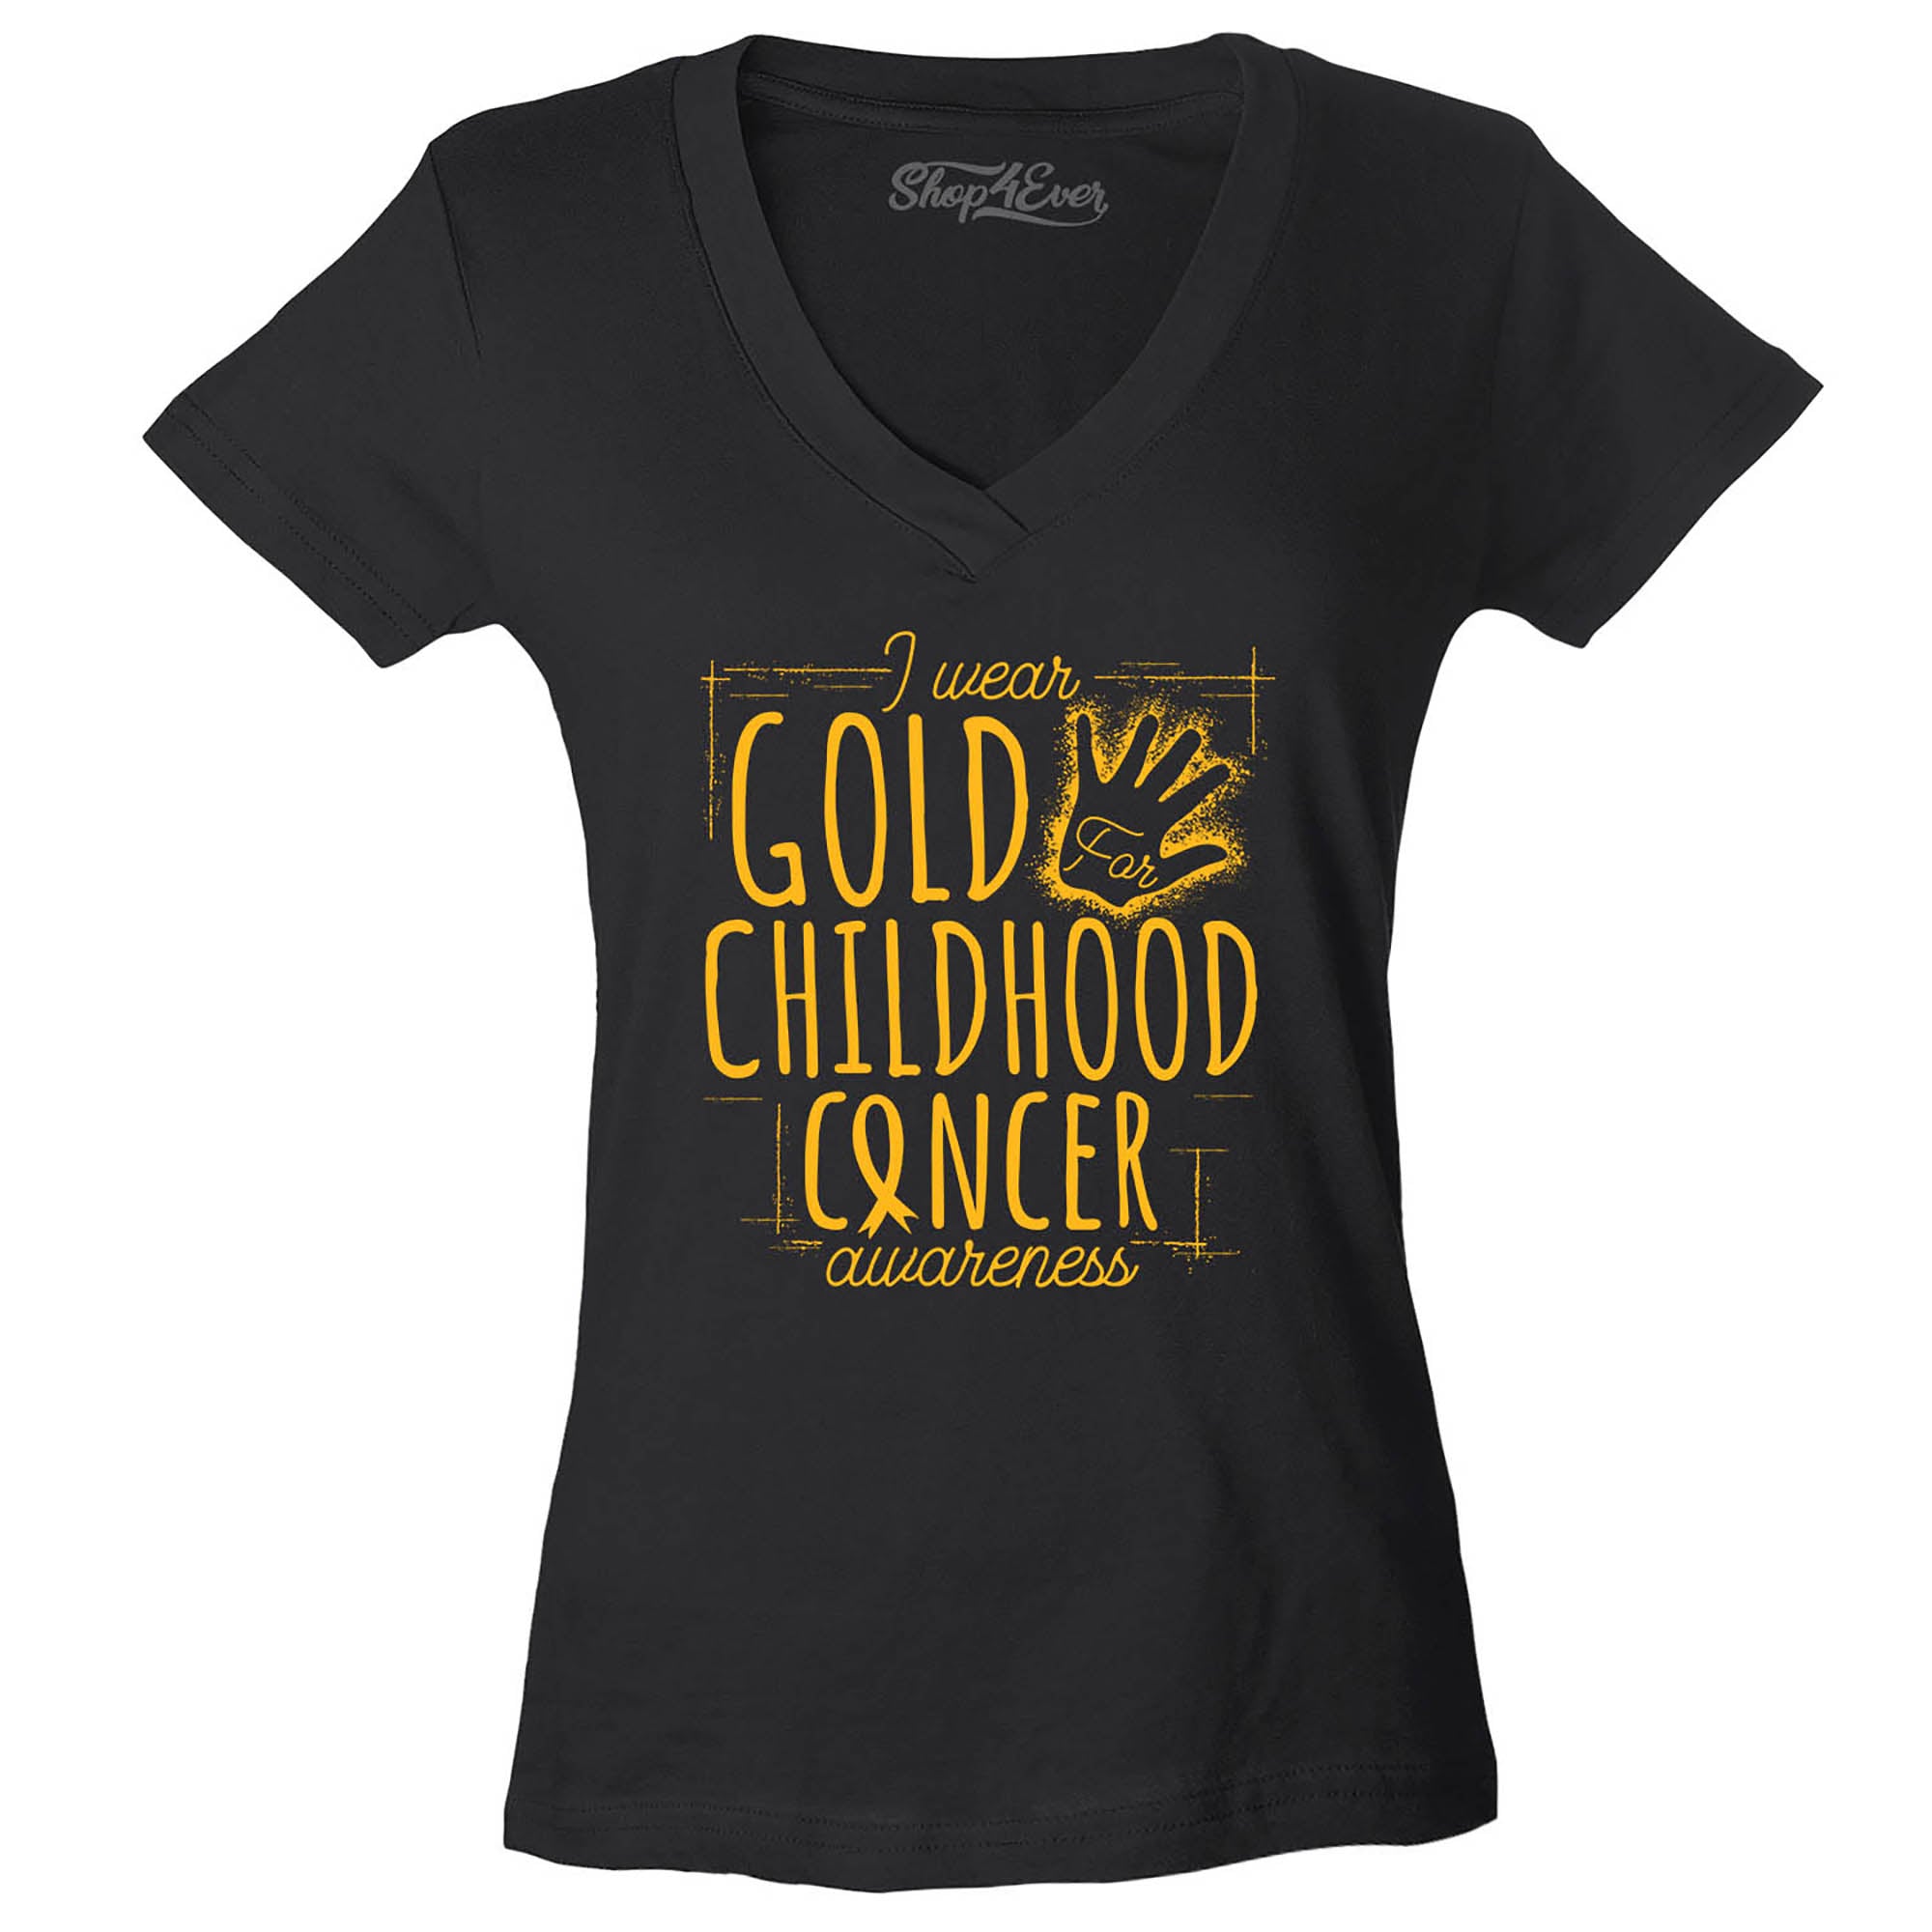 I Wear Gold for Childhood Cancer Awareness Women's V-Neck T-Shirt Slim Fit